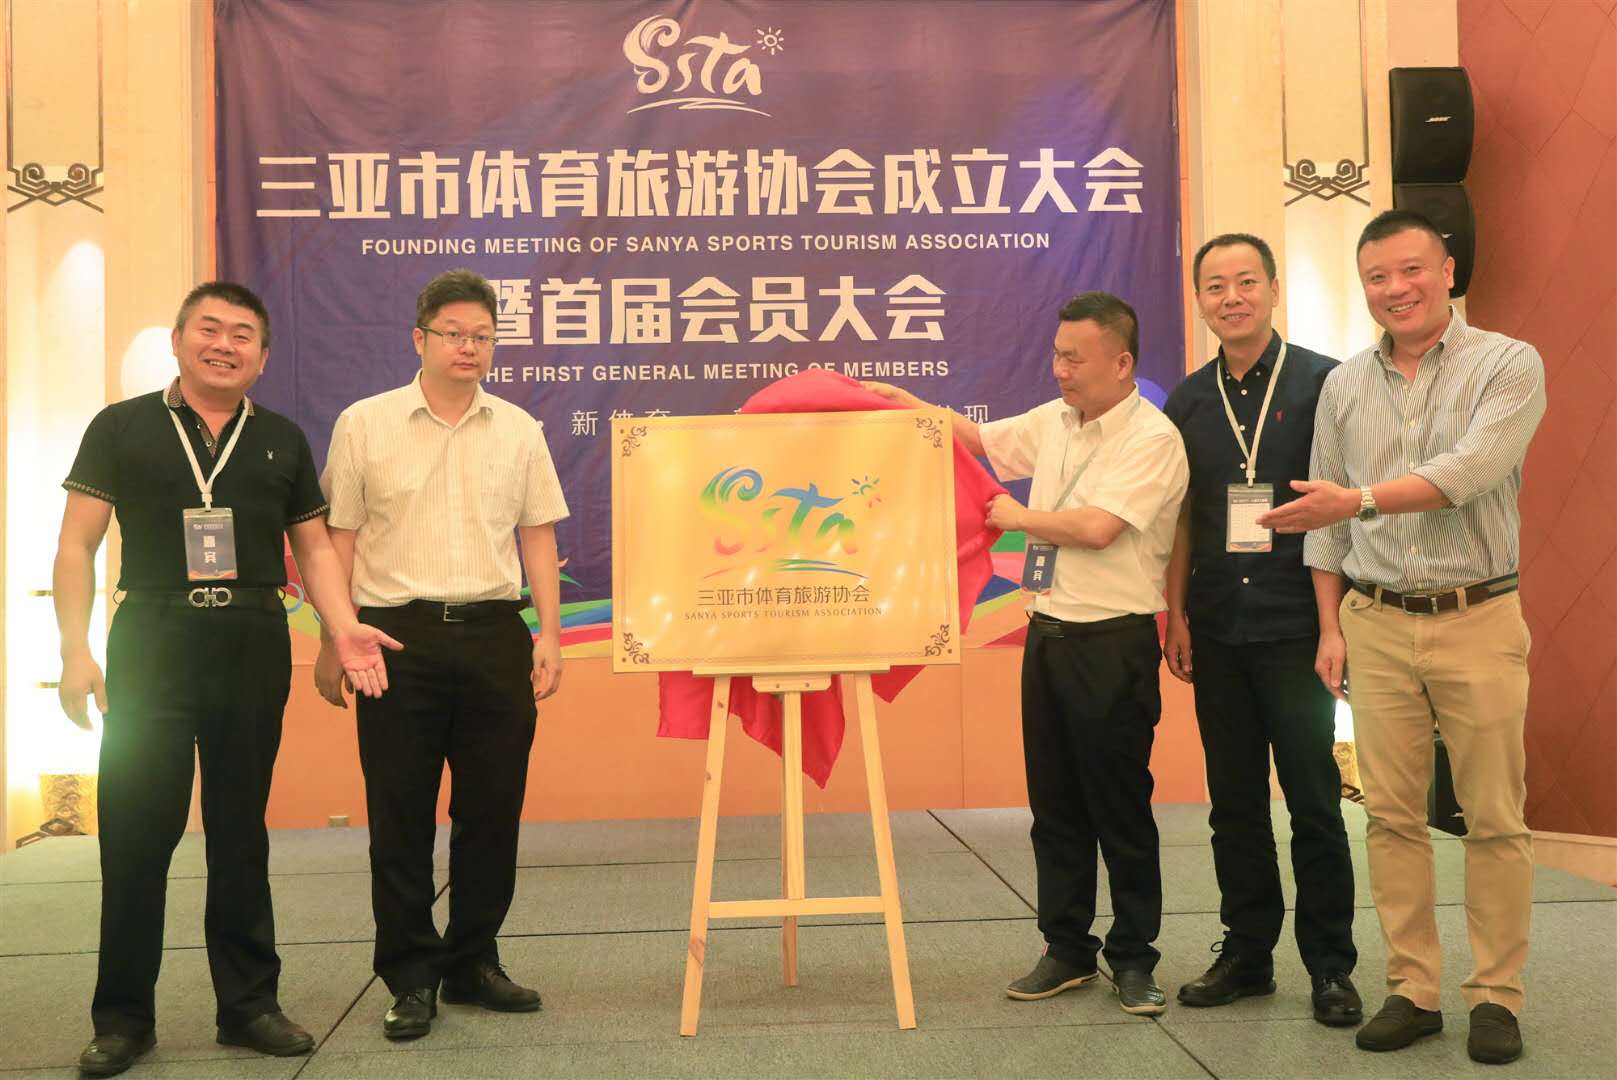 三亚市体育旅游协会成立大会暨首届会员大会5月22日圆满举行